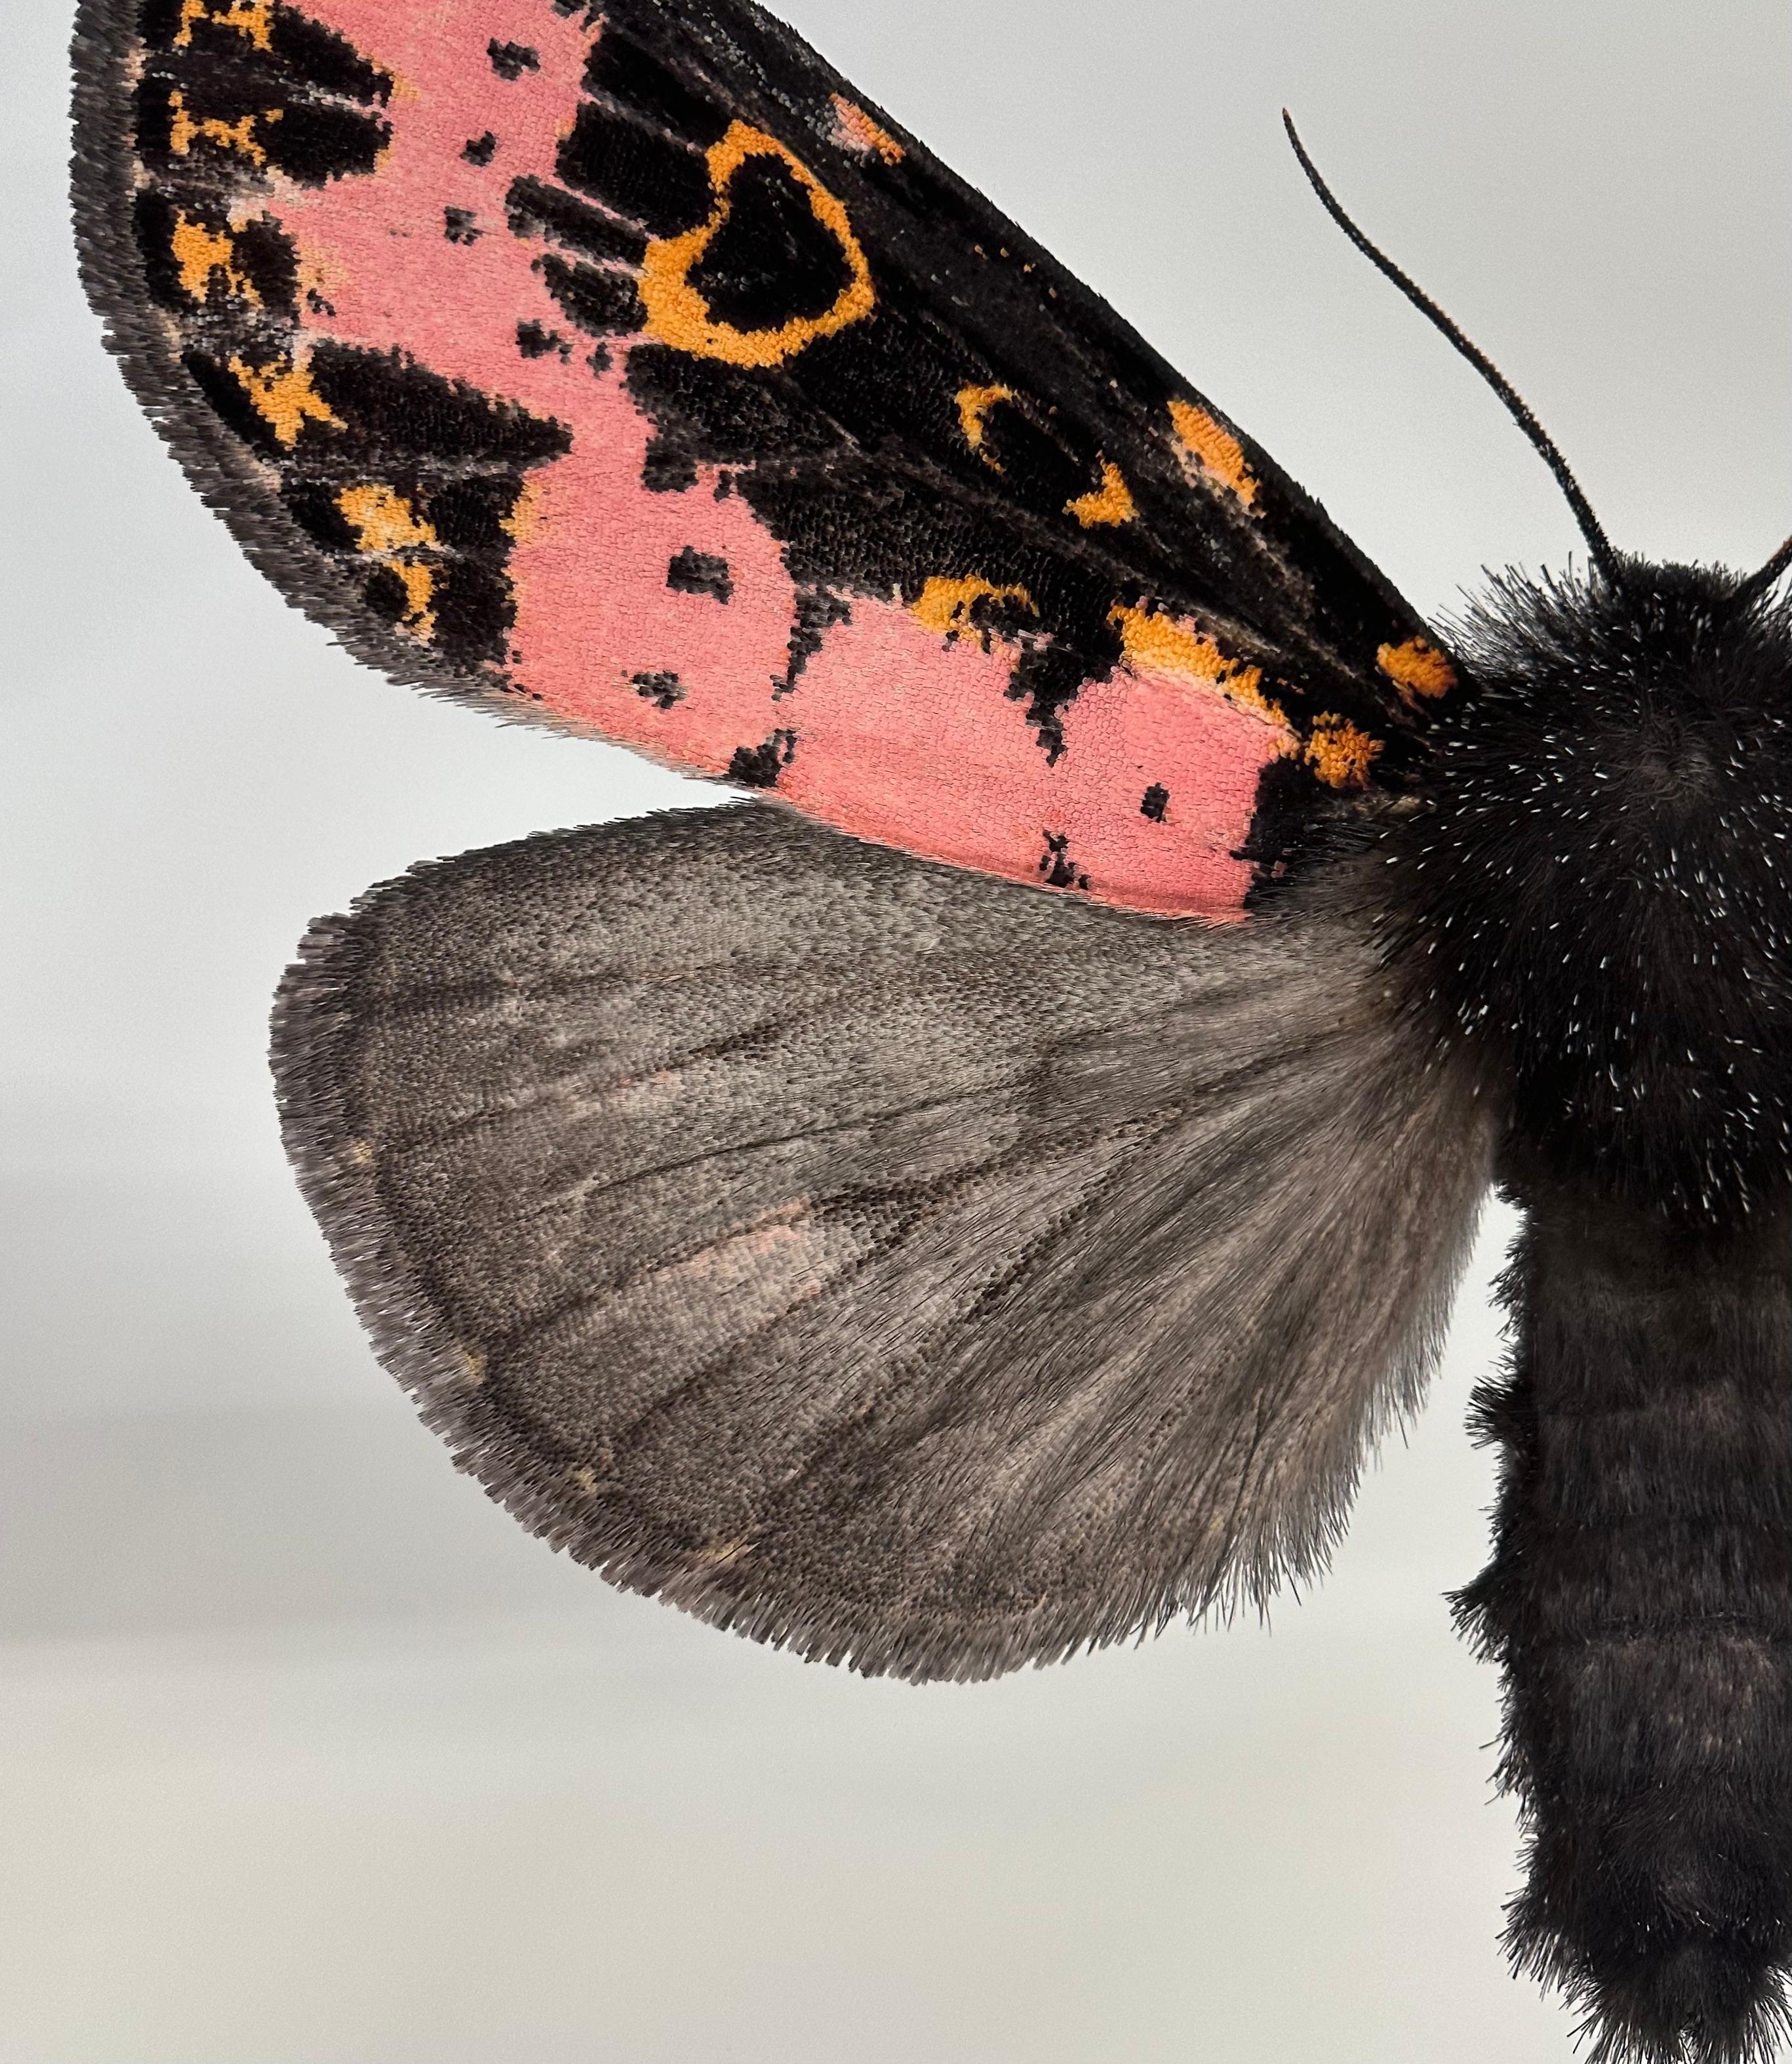 Dans cette impression pigmentaire d'archives hyper-détaillée sur papier aquarelle, un papillon de nuit avec des marques roses, orange et noires sur le haut des ailes se détache de façon spectaculaire sur un fond blanc uni. 

Le prix indiqué est le